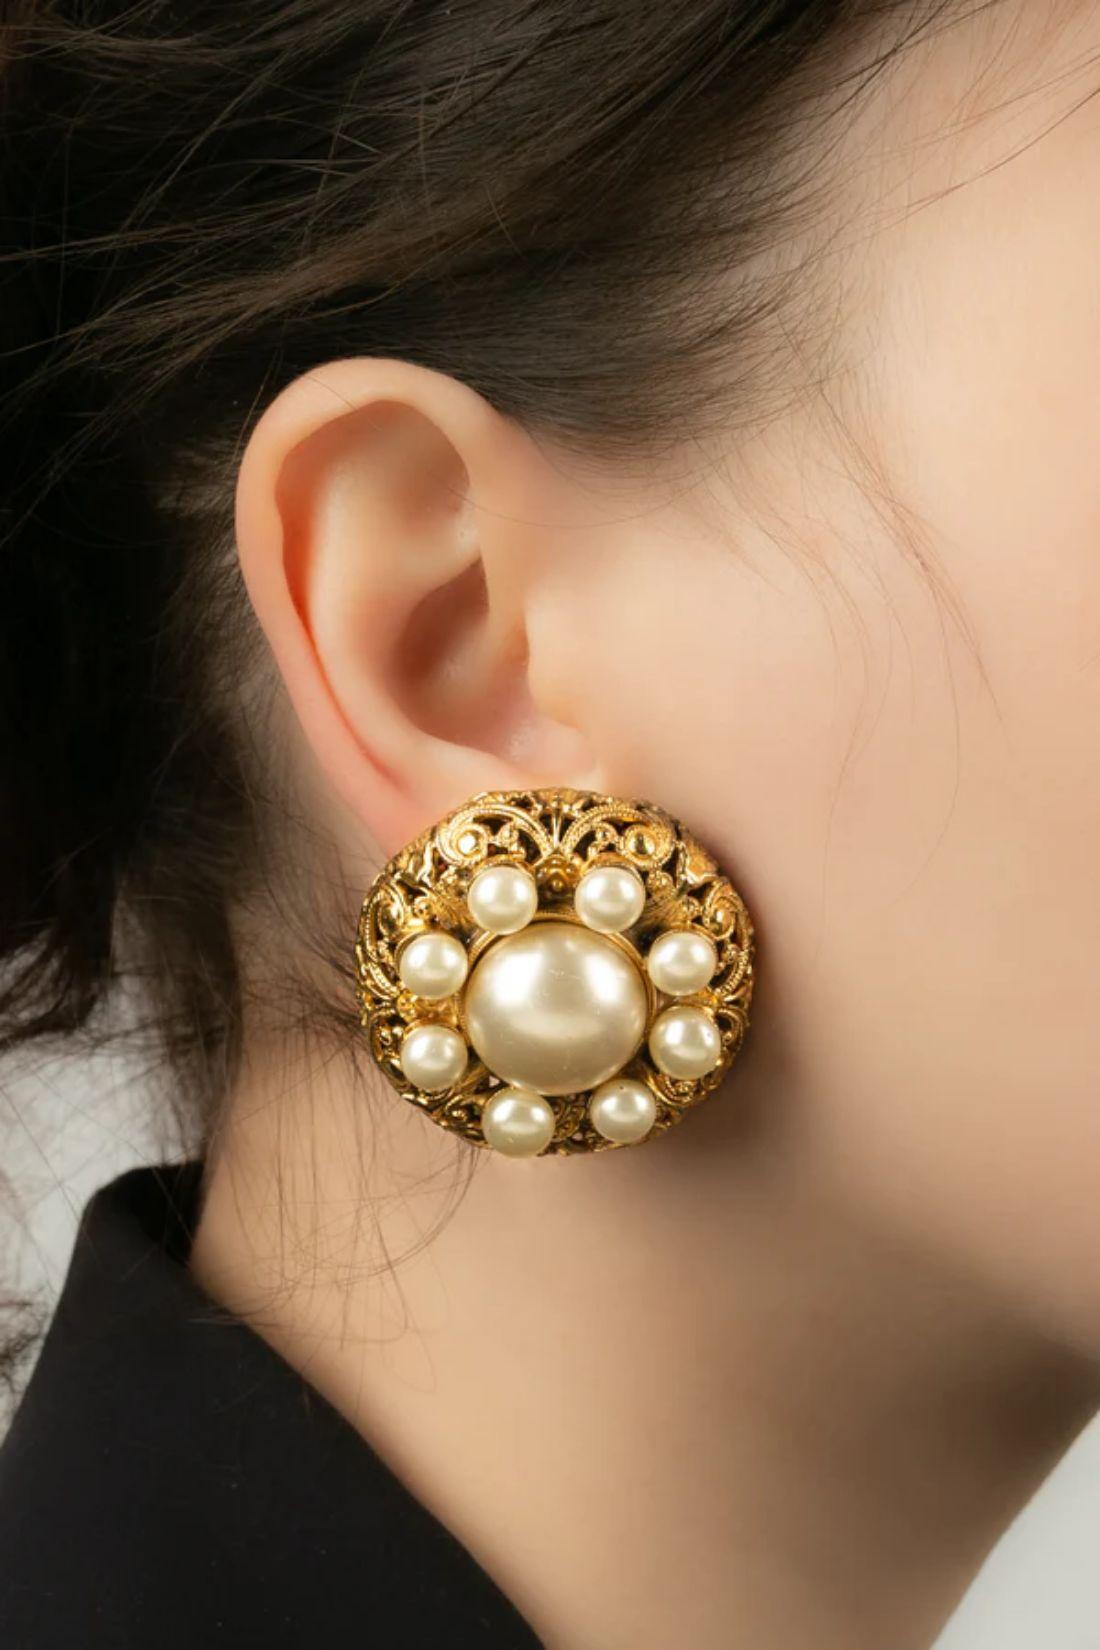 Chanel - Ohrringe aus vergoldetem Metall und mit Perlglascabochons. Zu beachten ist das Vorhandensein von Grünspan auf der Rückseite des Juwels.

Zusätzliche Informationen:
Abmessungen: Ø 3.5 cm
Zustand: Sehr guter Zustand
Verkäufer Ref Nummer: BOB33